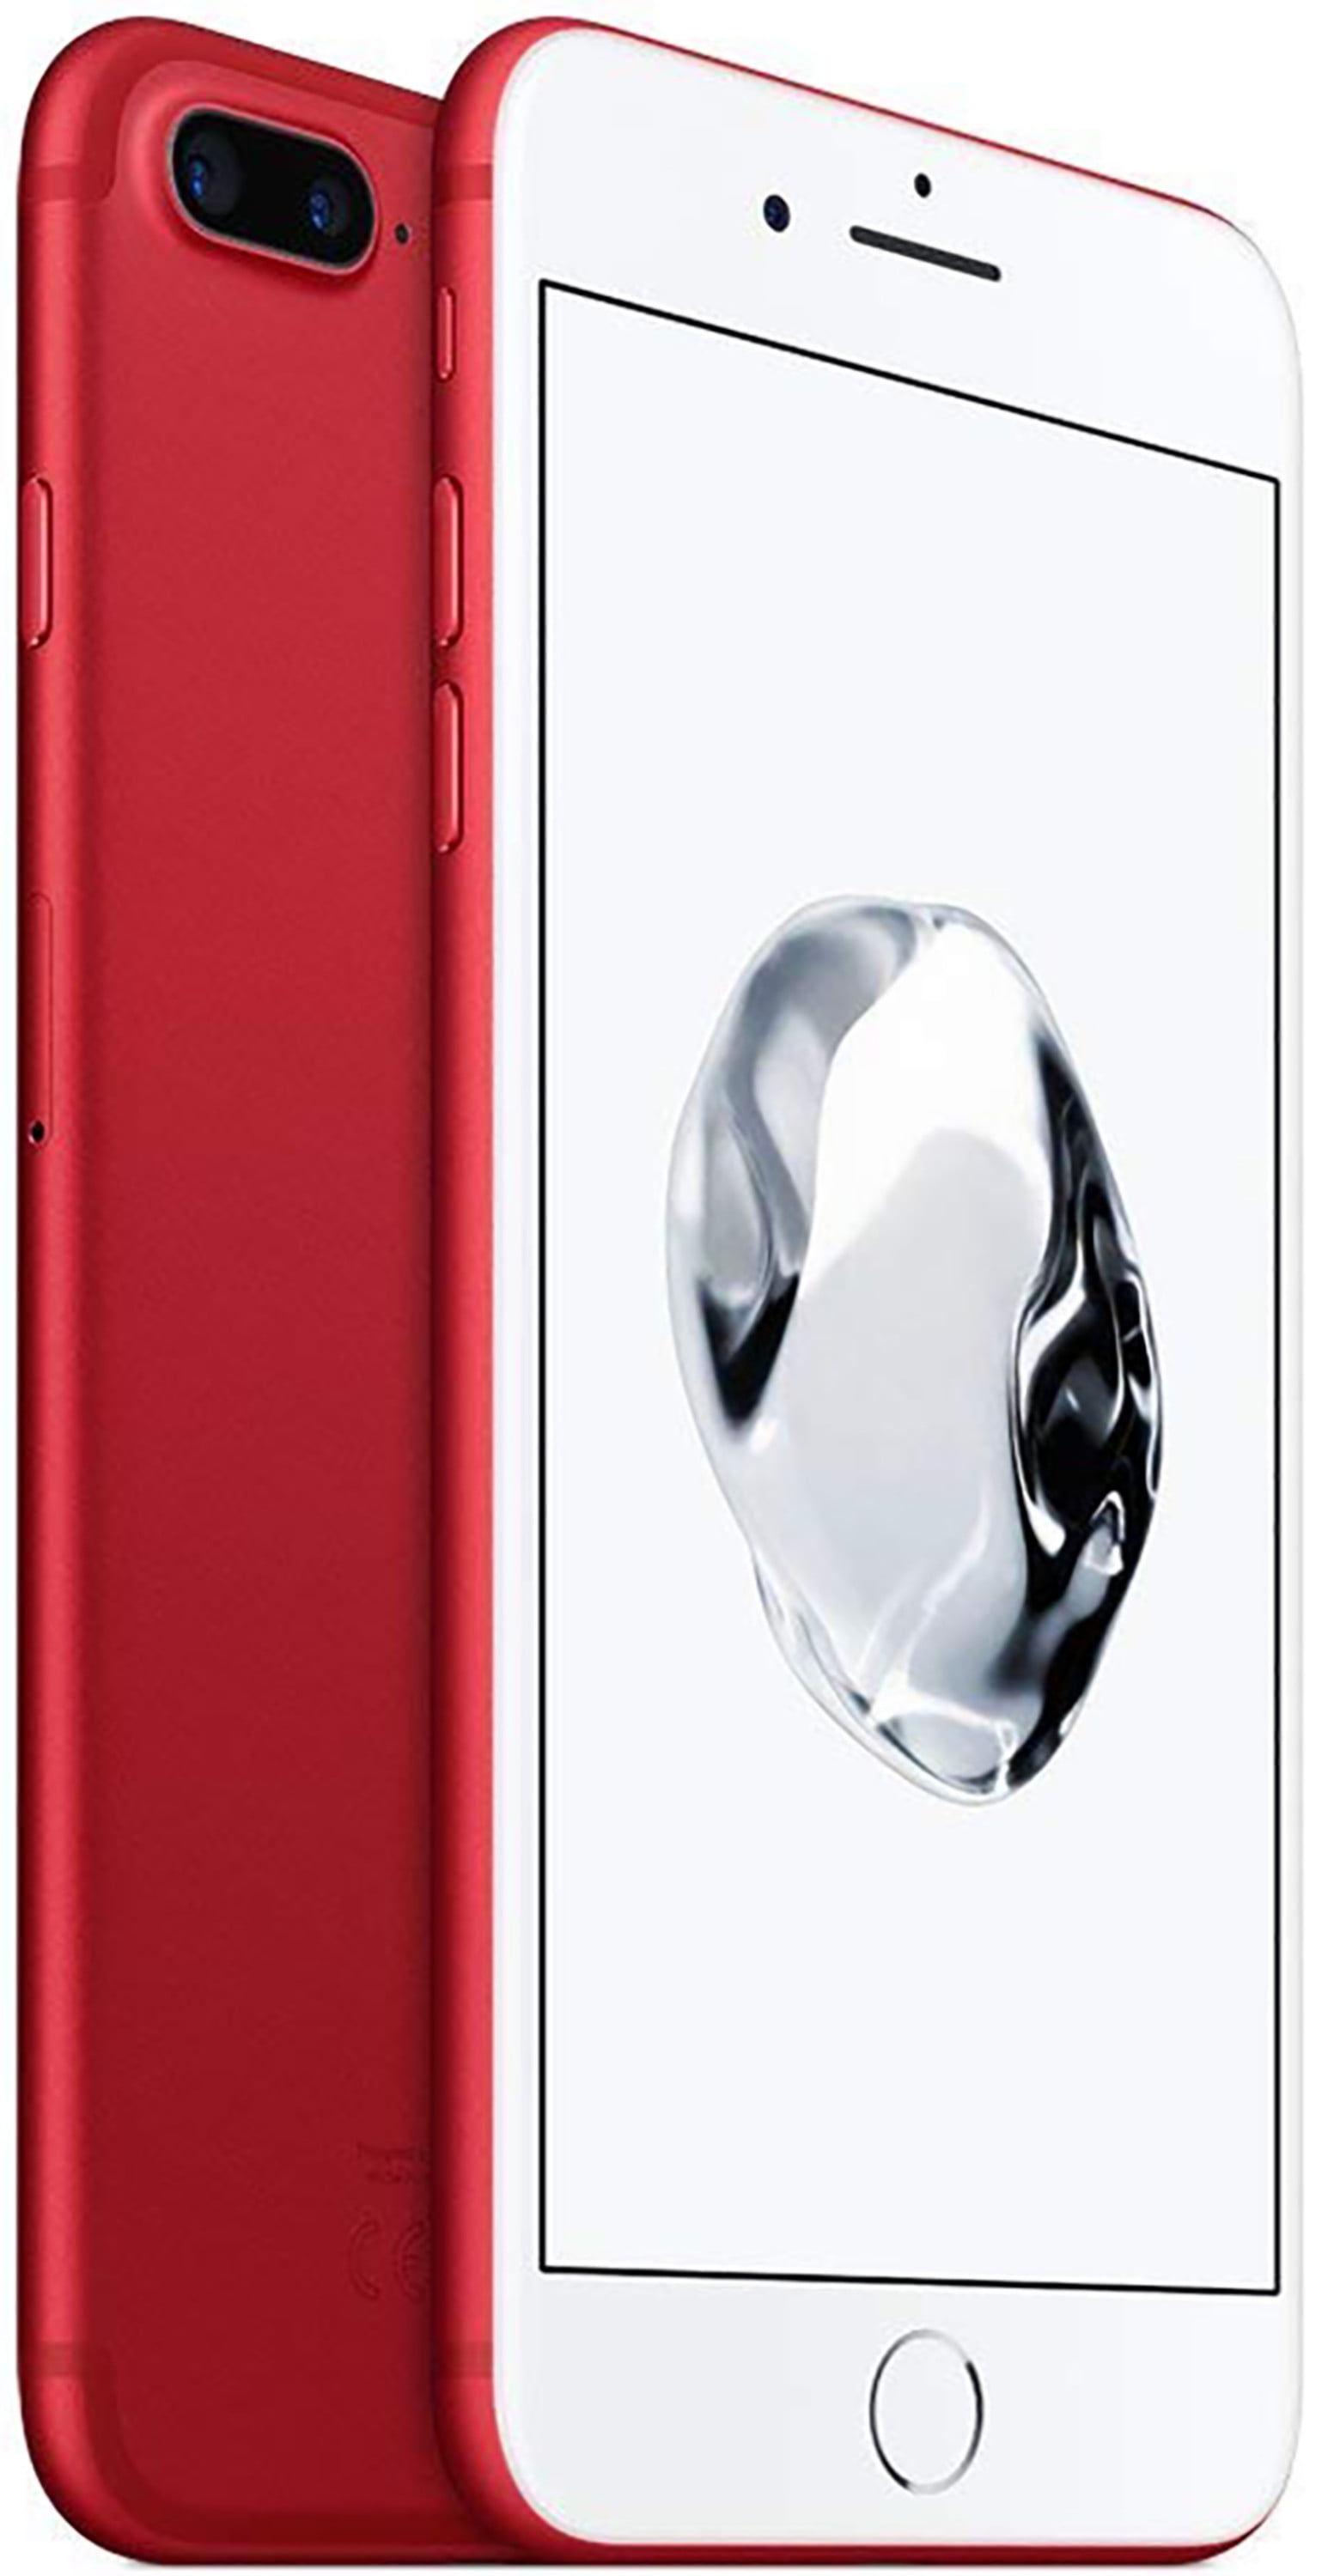 Apple iPhone 7 Plus 128GB Unlocked GSM 4G LTE Quad-Core Smartphone